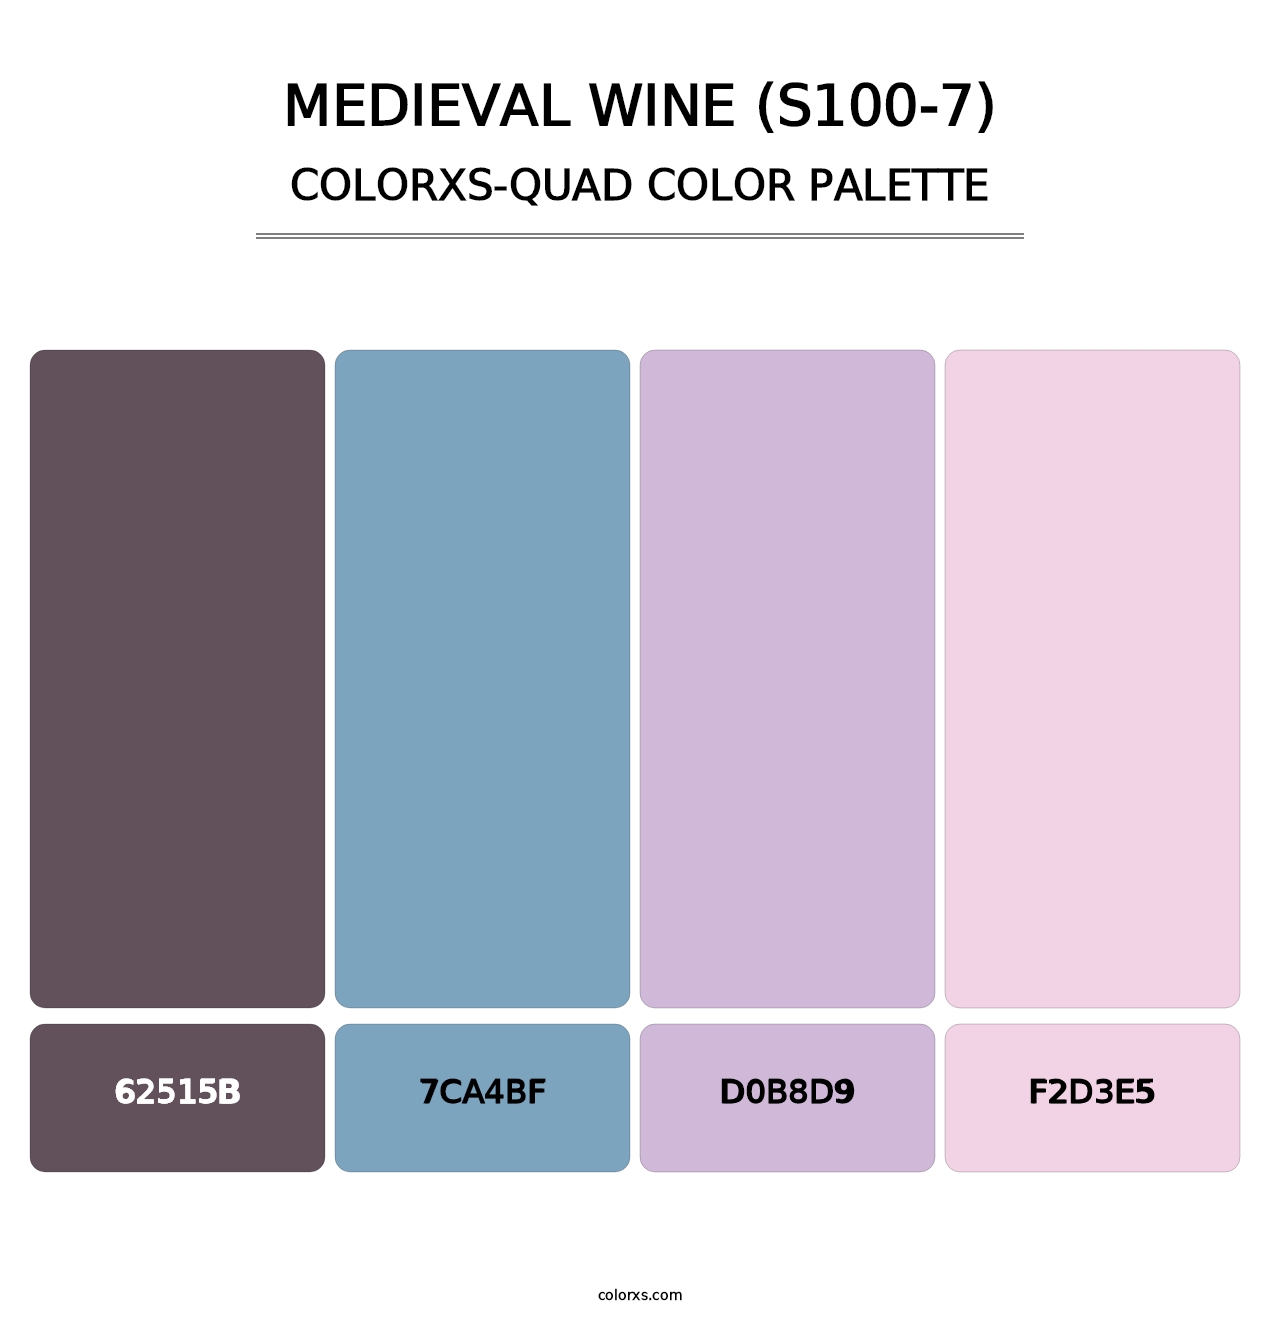 Medieval Wine (S100-7) - Colorxs Quad Palette